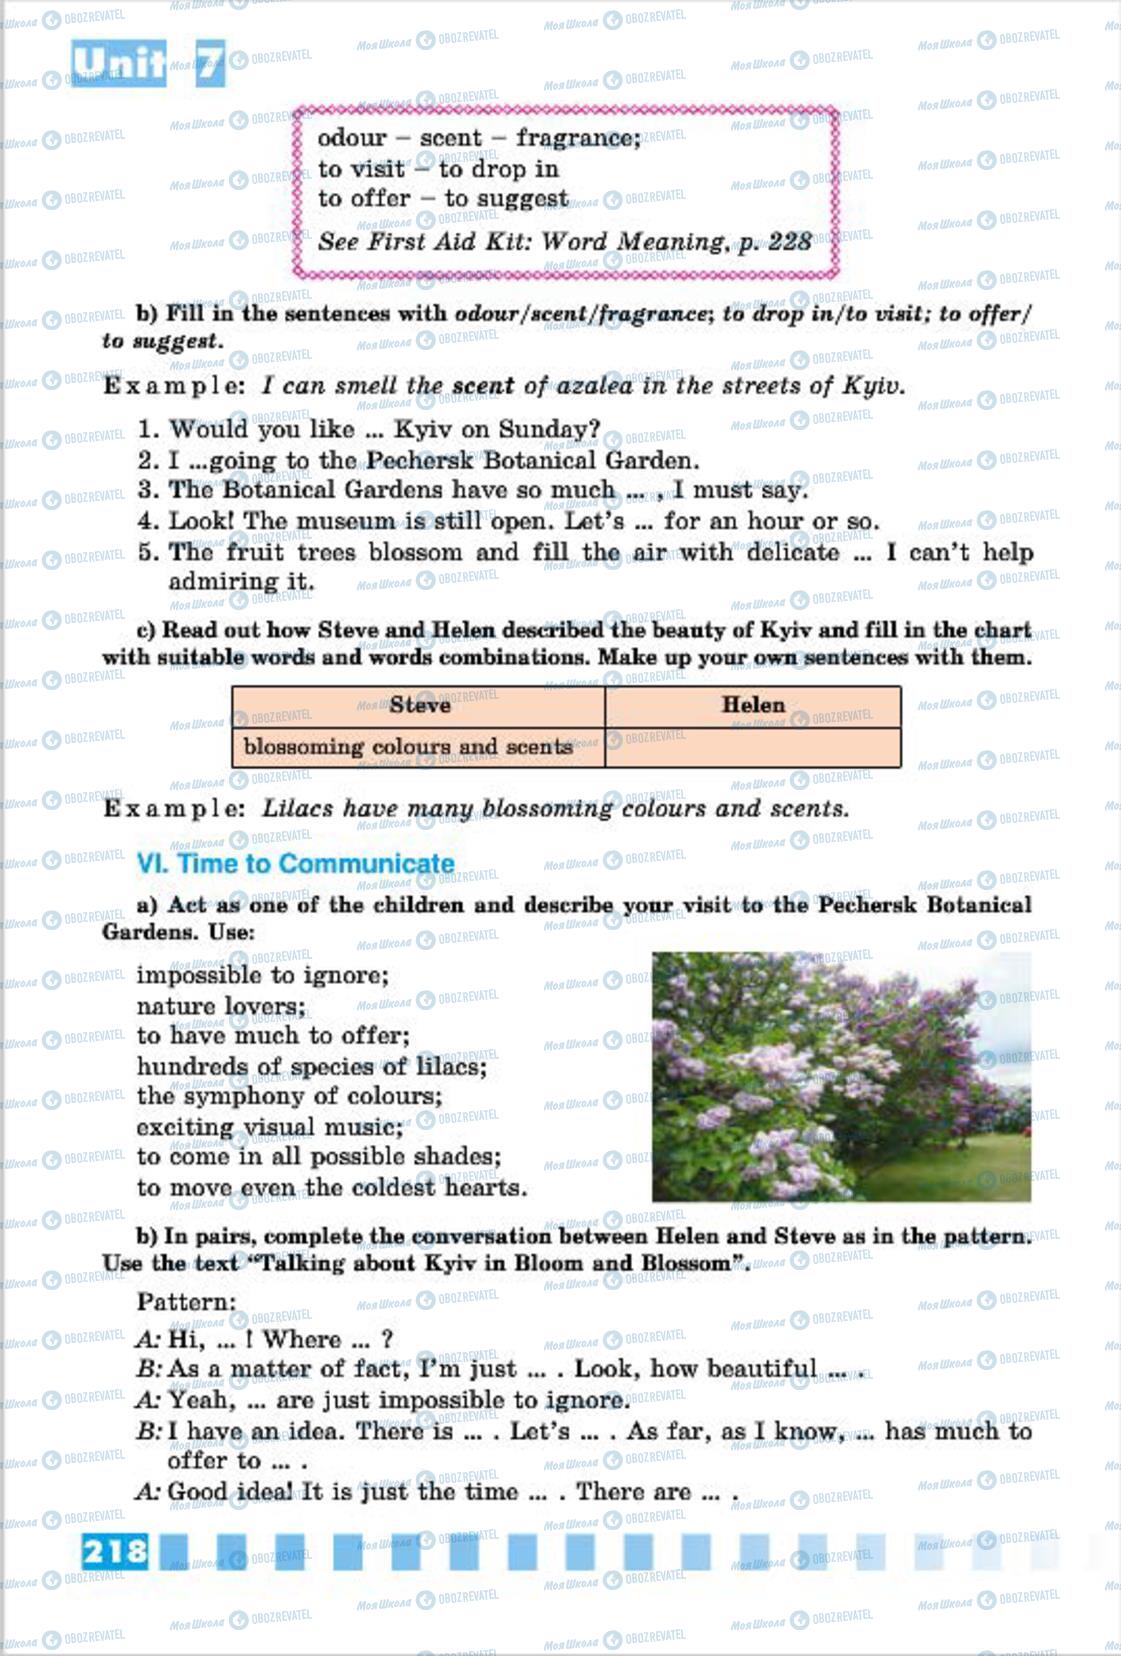 Підручники Англійська мова 7 клас сторінка 218